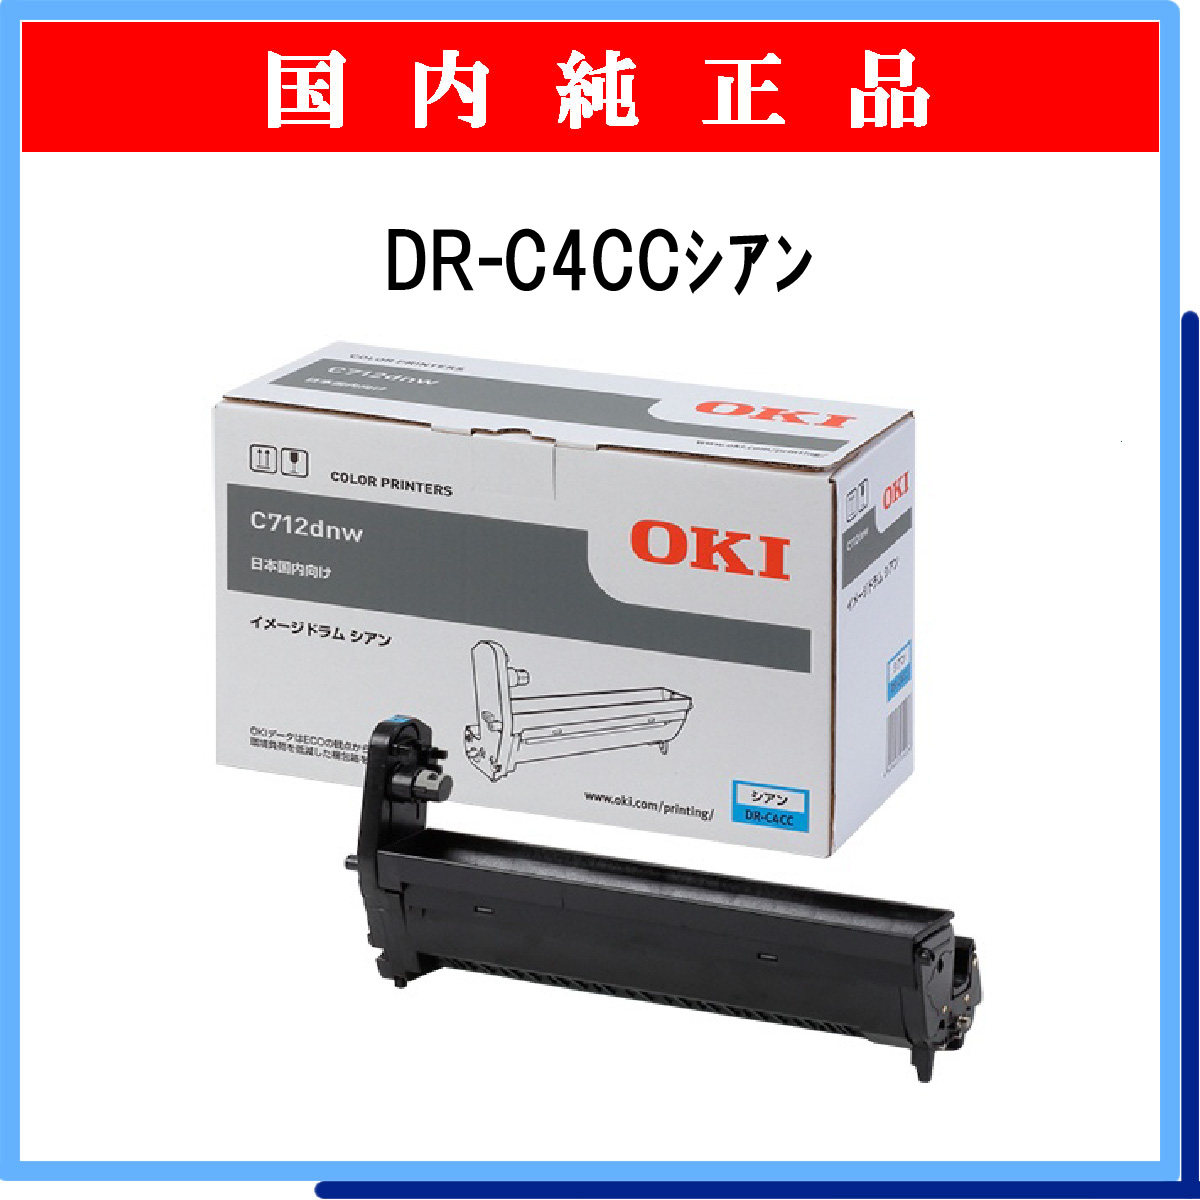 沖電気 OKI MICROLINE VINCI LEDカラープリンタ C941 931 911dn用 イメージドラム シアン ID-C3RC - 1